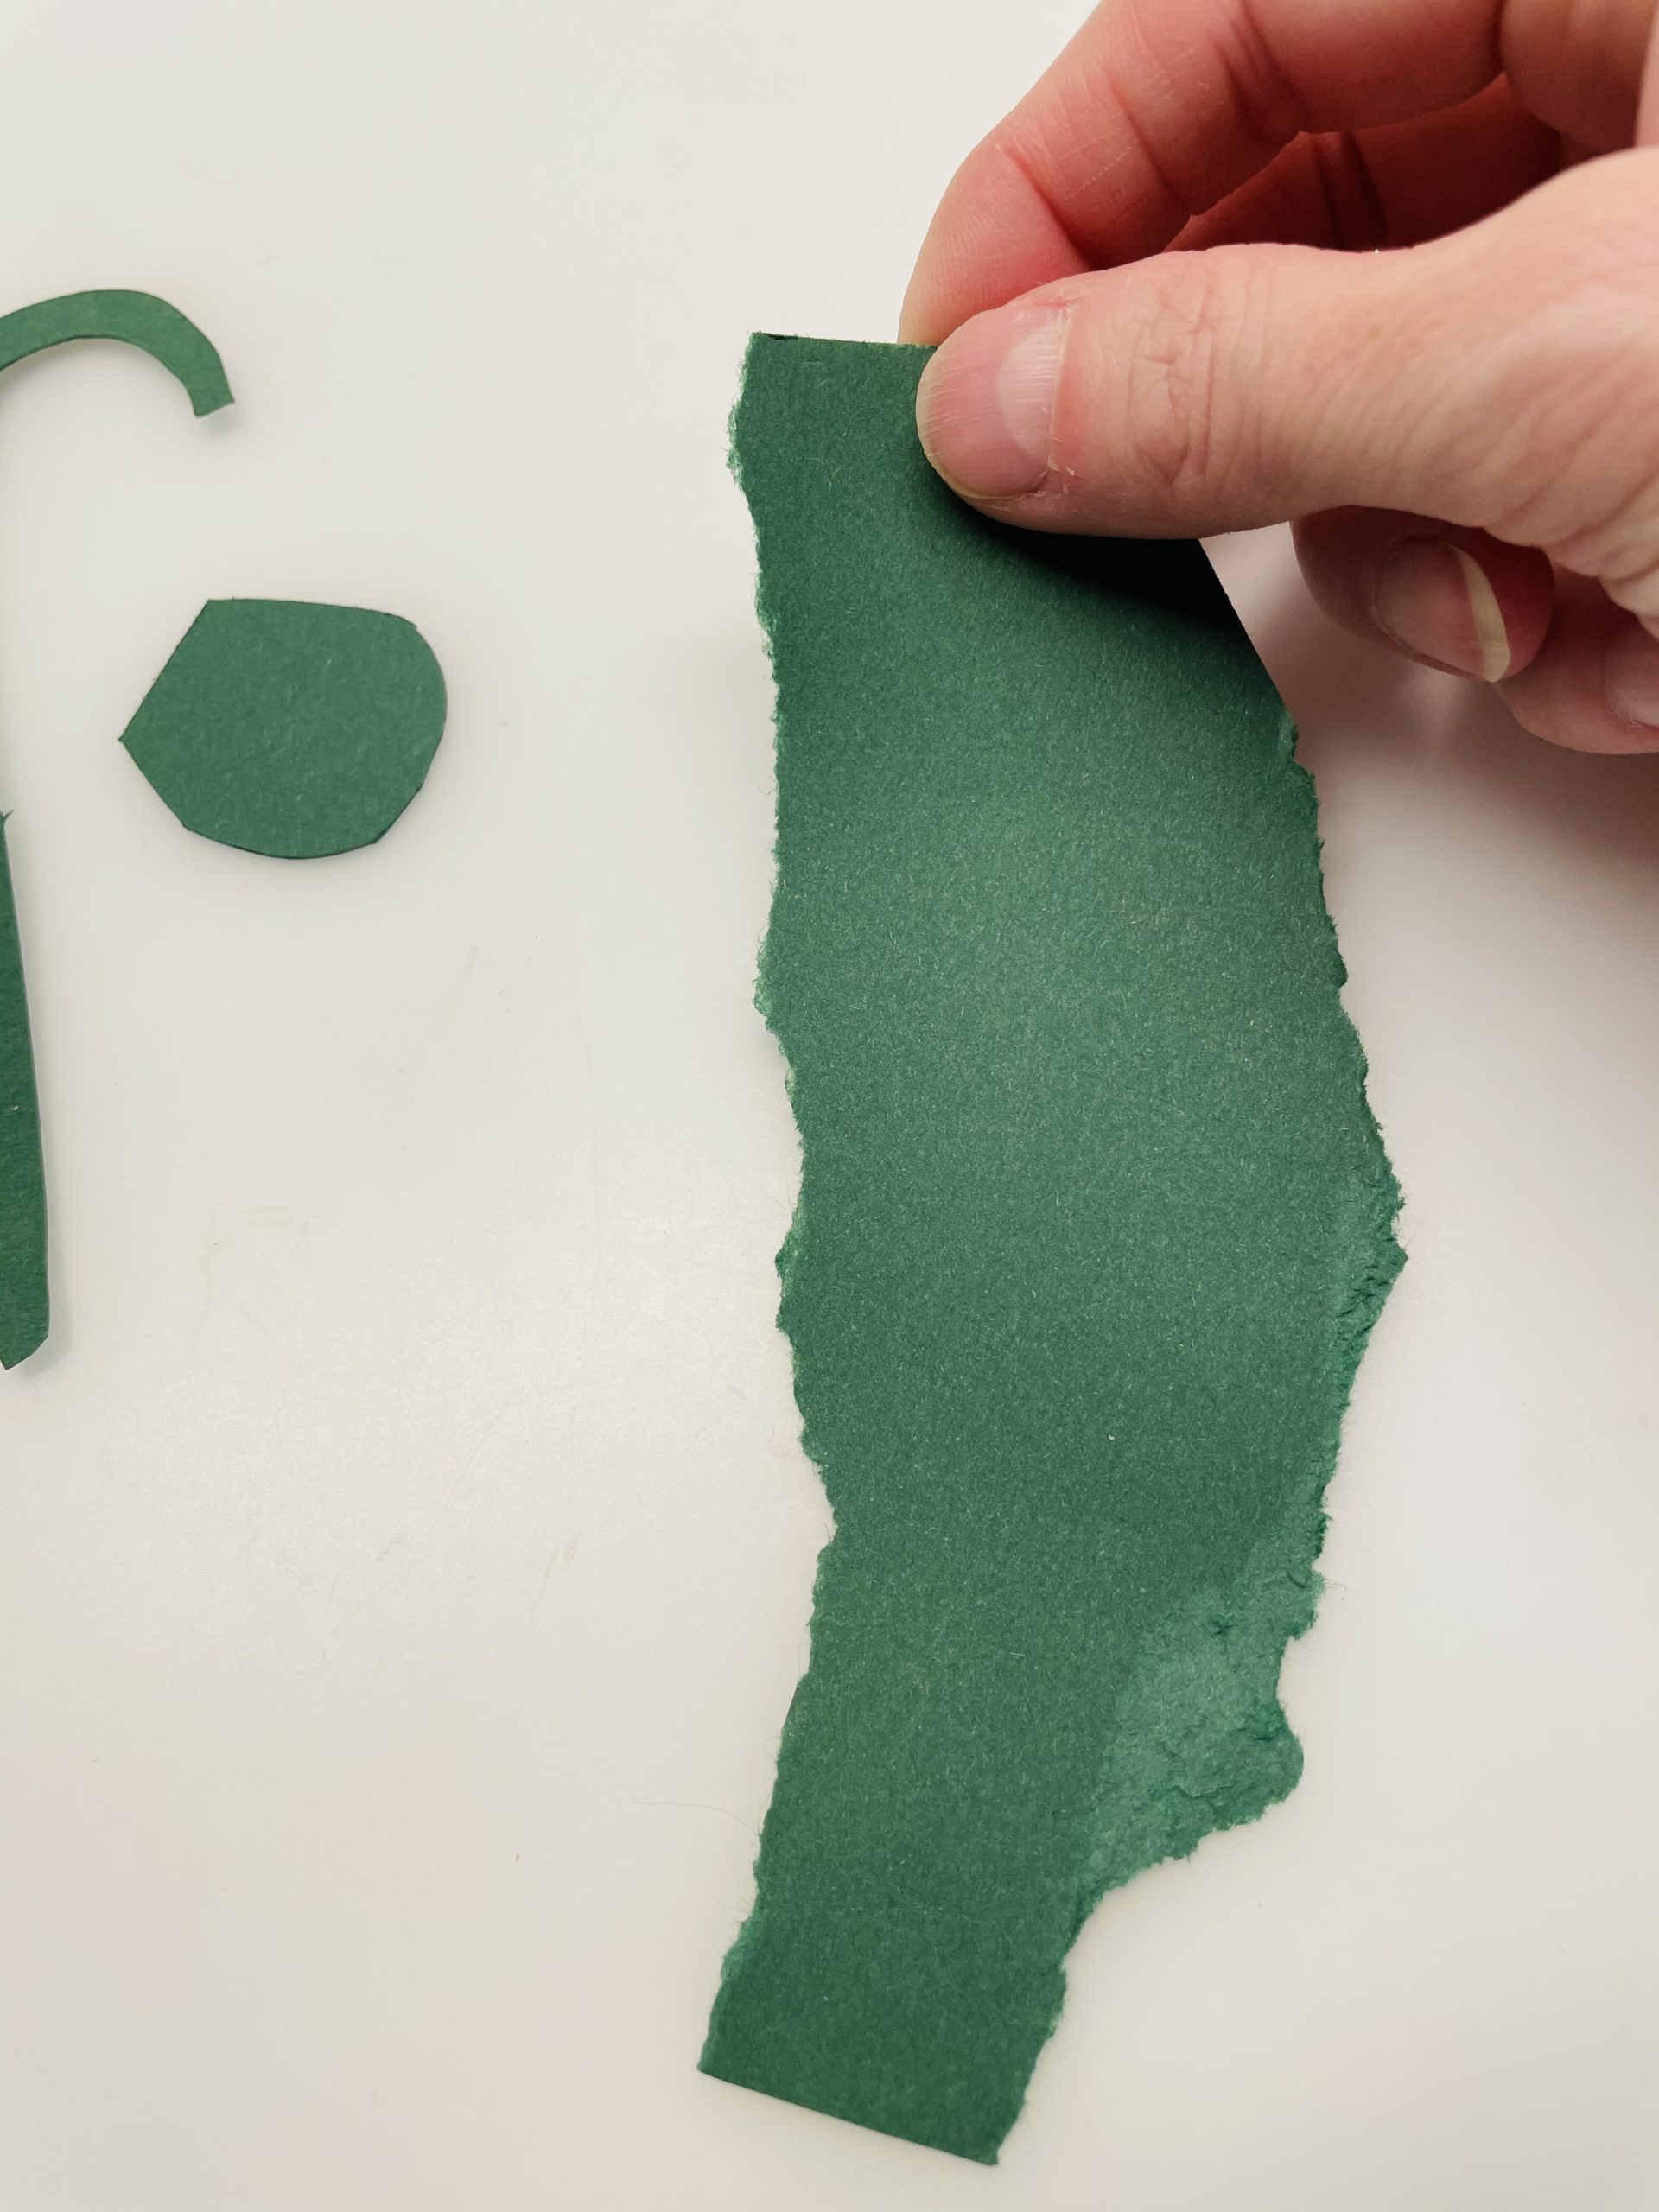 Bild zum Schritt 17 für das Bastel- und DIY-Abenteuer für Kinder: 'Aus einem Reststück von grünem Tonpapier könnt ihr euch nun...'